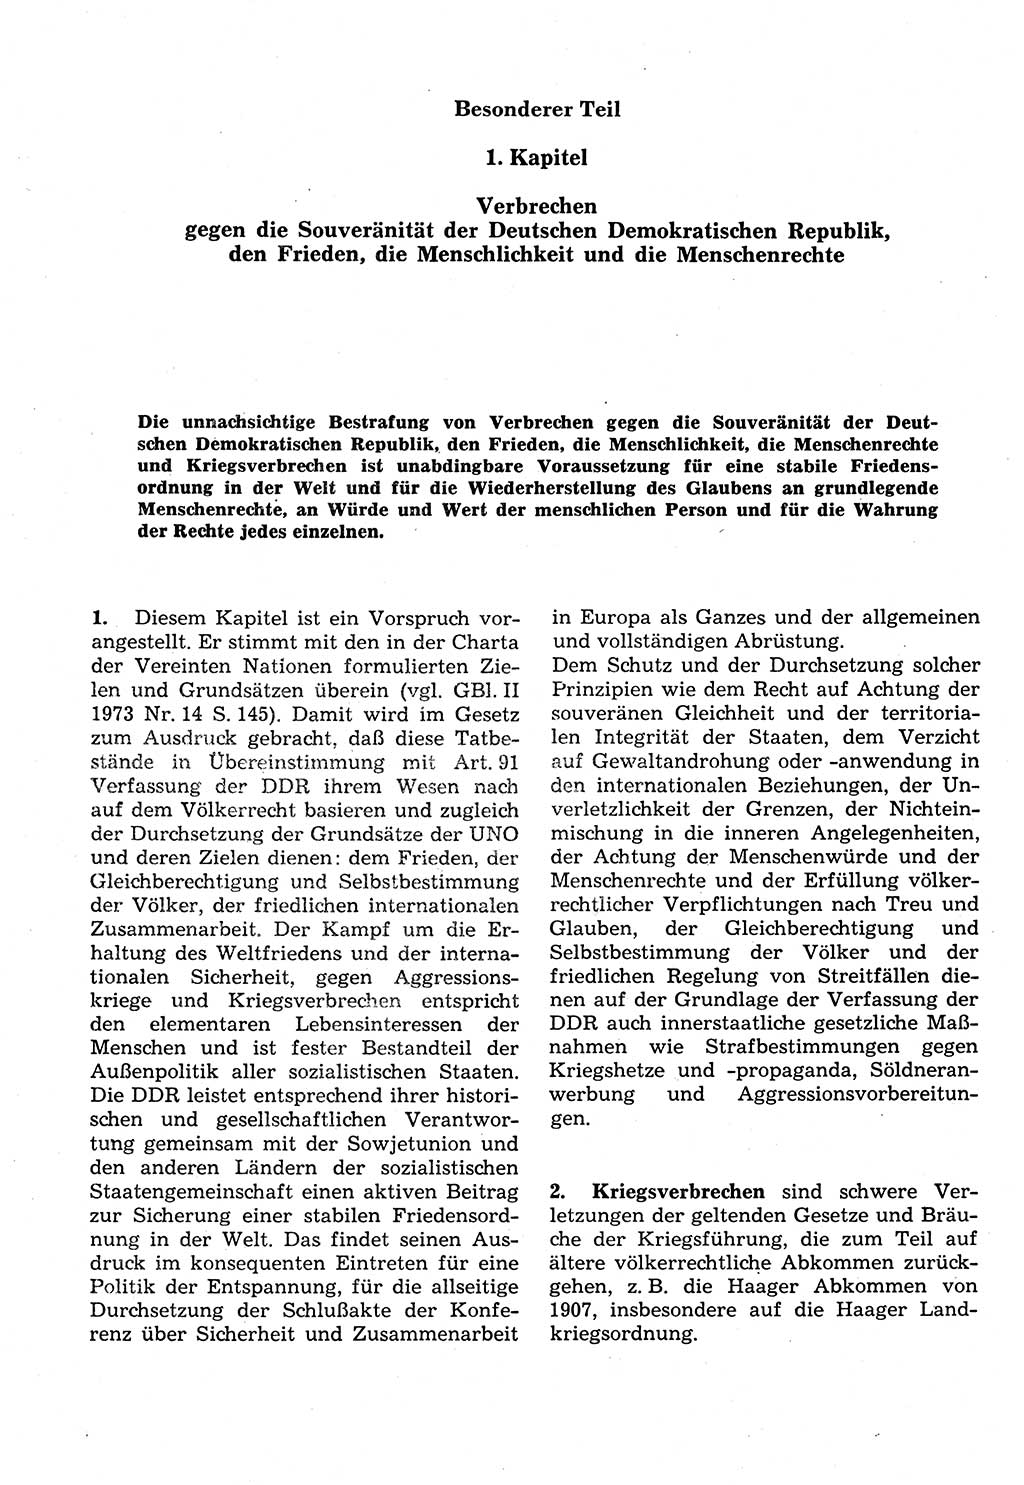 Strafrecht der Deutschen Demokratischen Republik (DDR), Kommentar zum Strafgesetzbuch (StGB) 1987, Seite 246 (Strafr. DDR Komm. StGB 1987, S. 246)